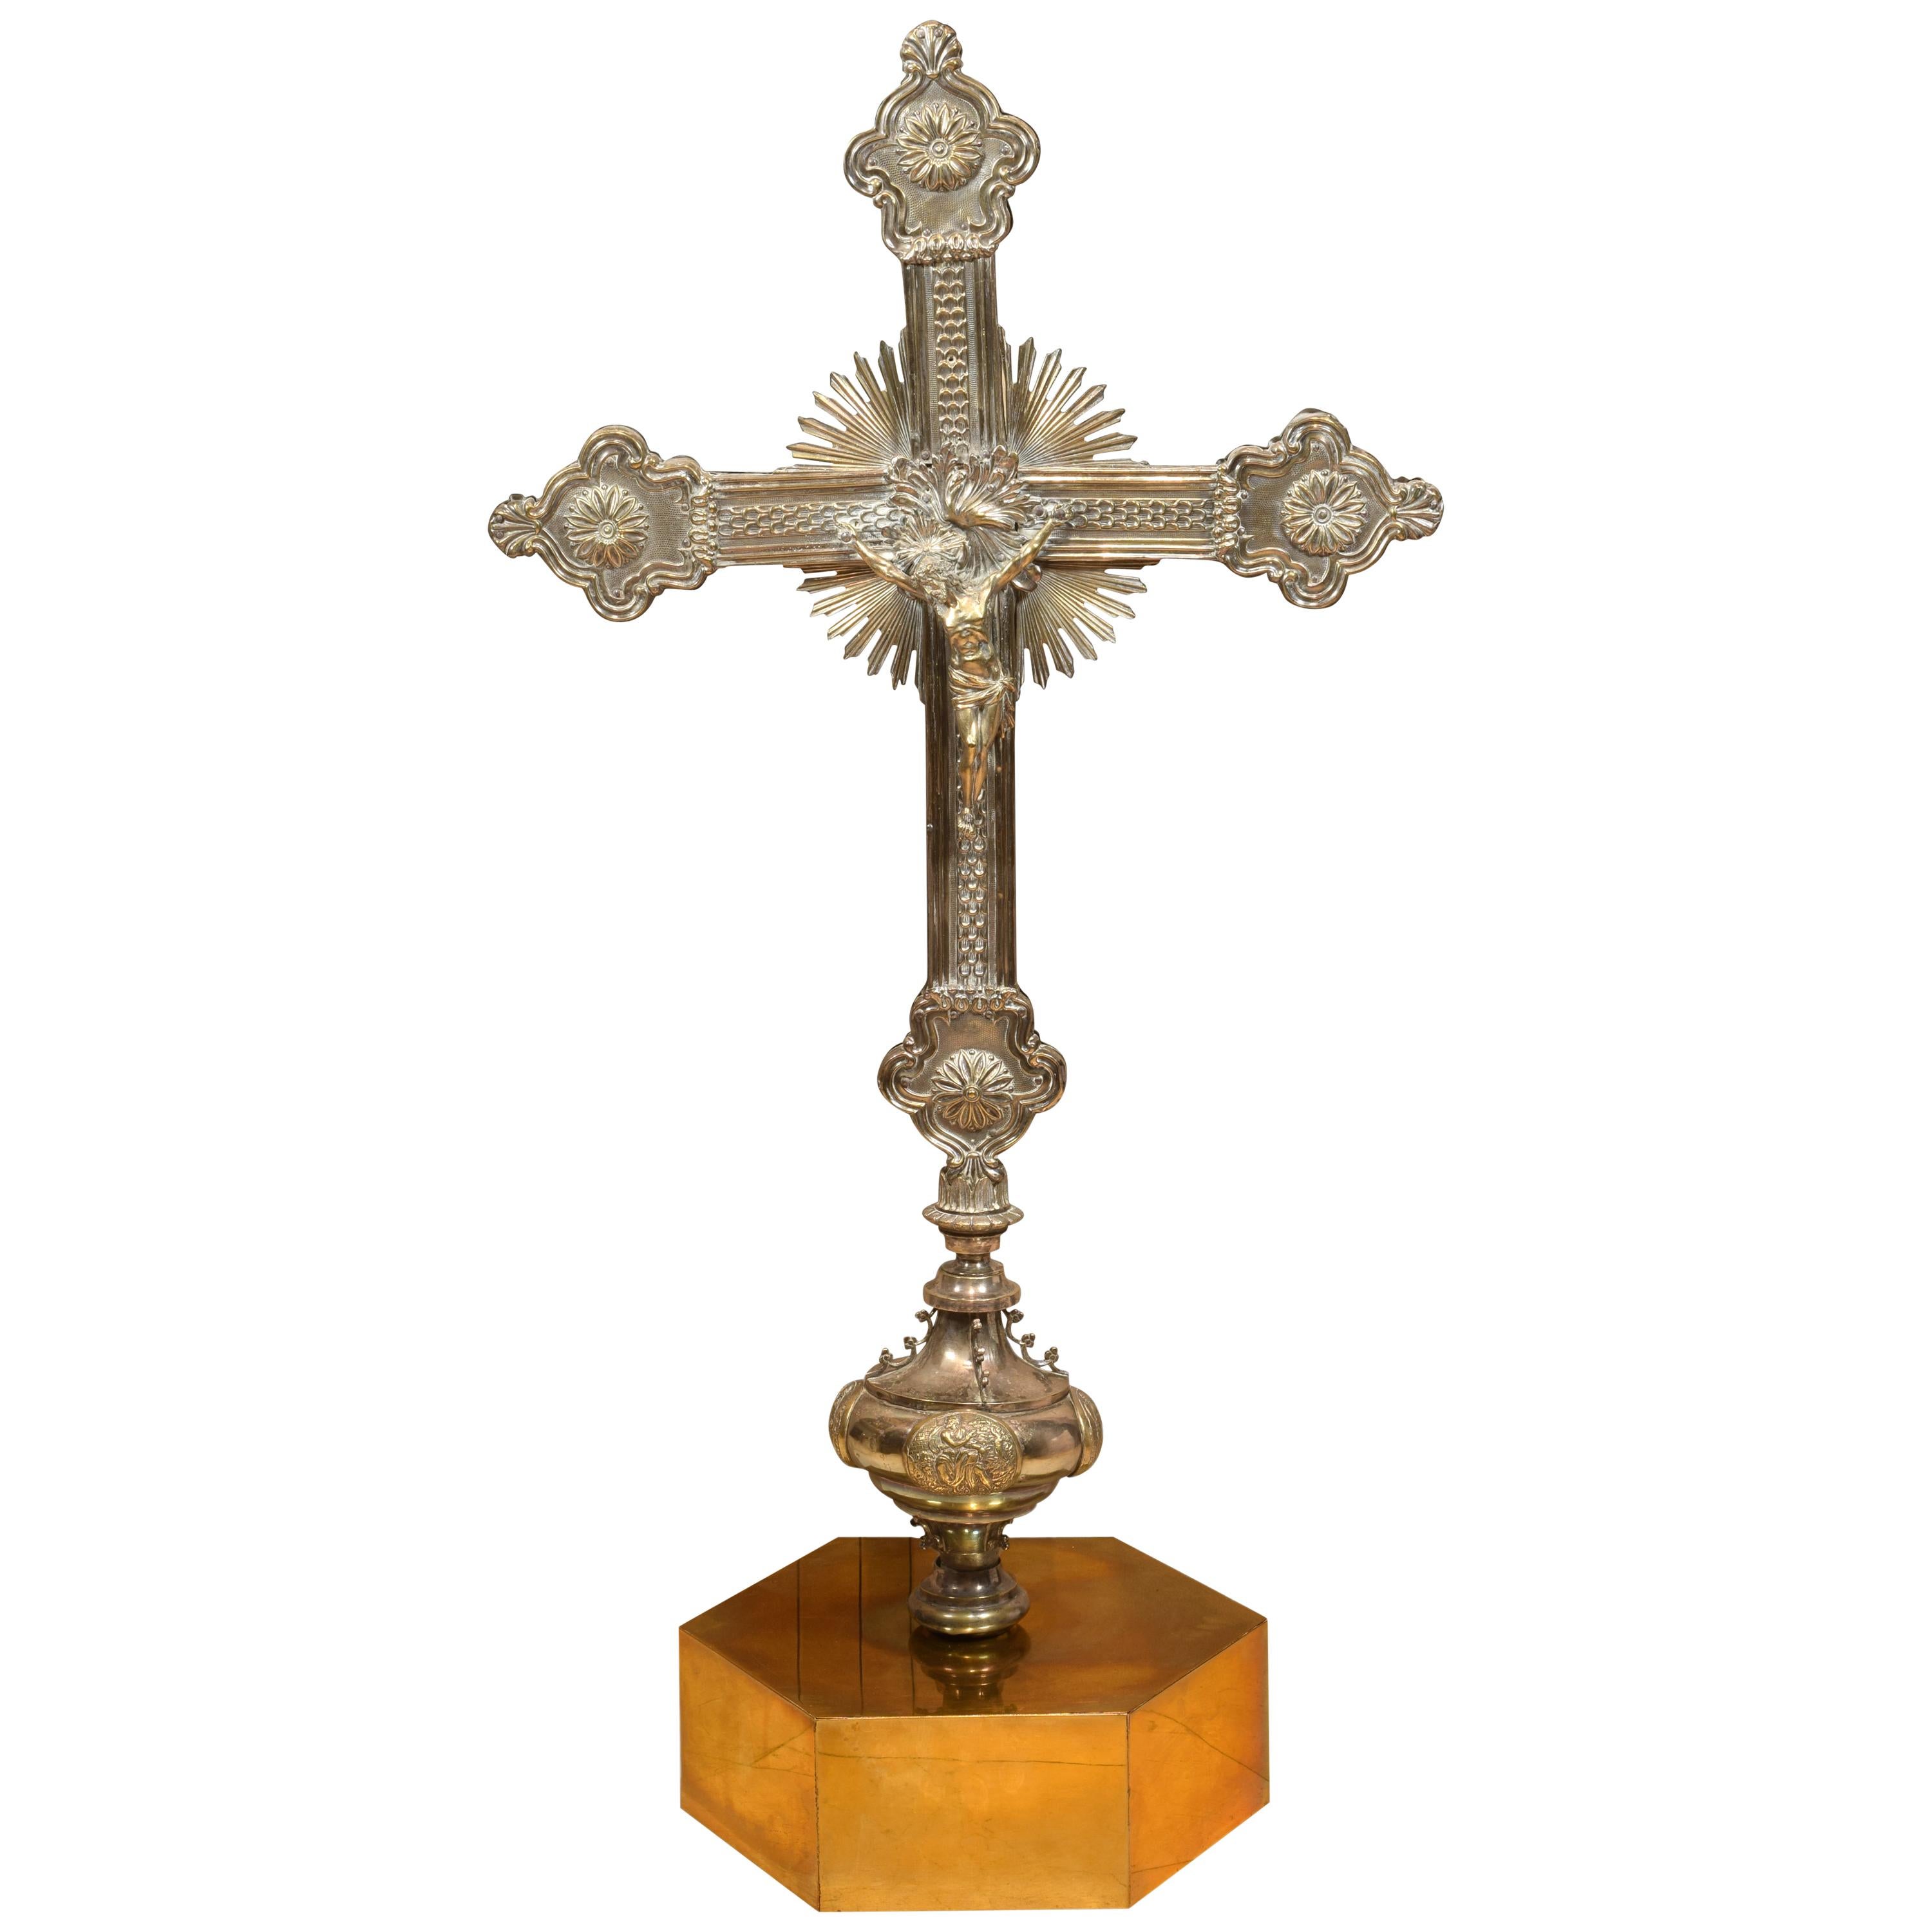 Top croix de procession en bronze doré, 20e siècle, d'après des modèles antérieurs